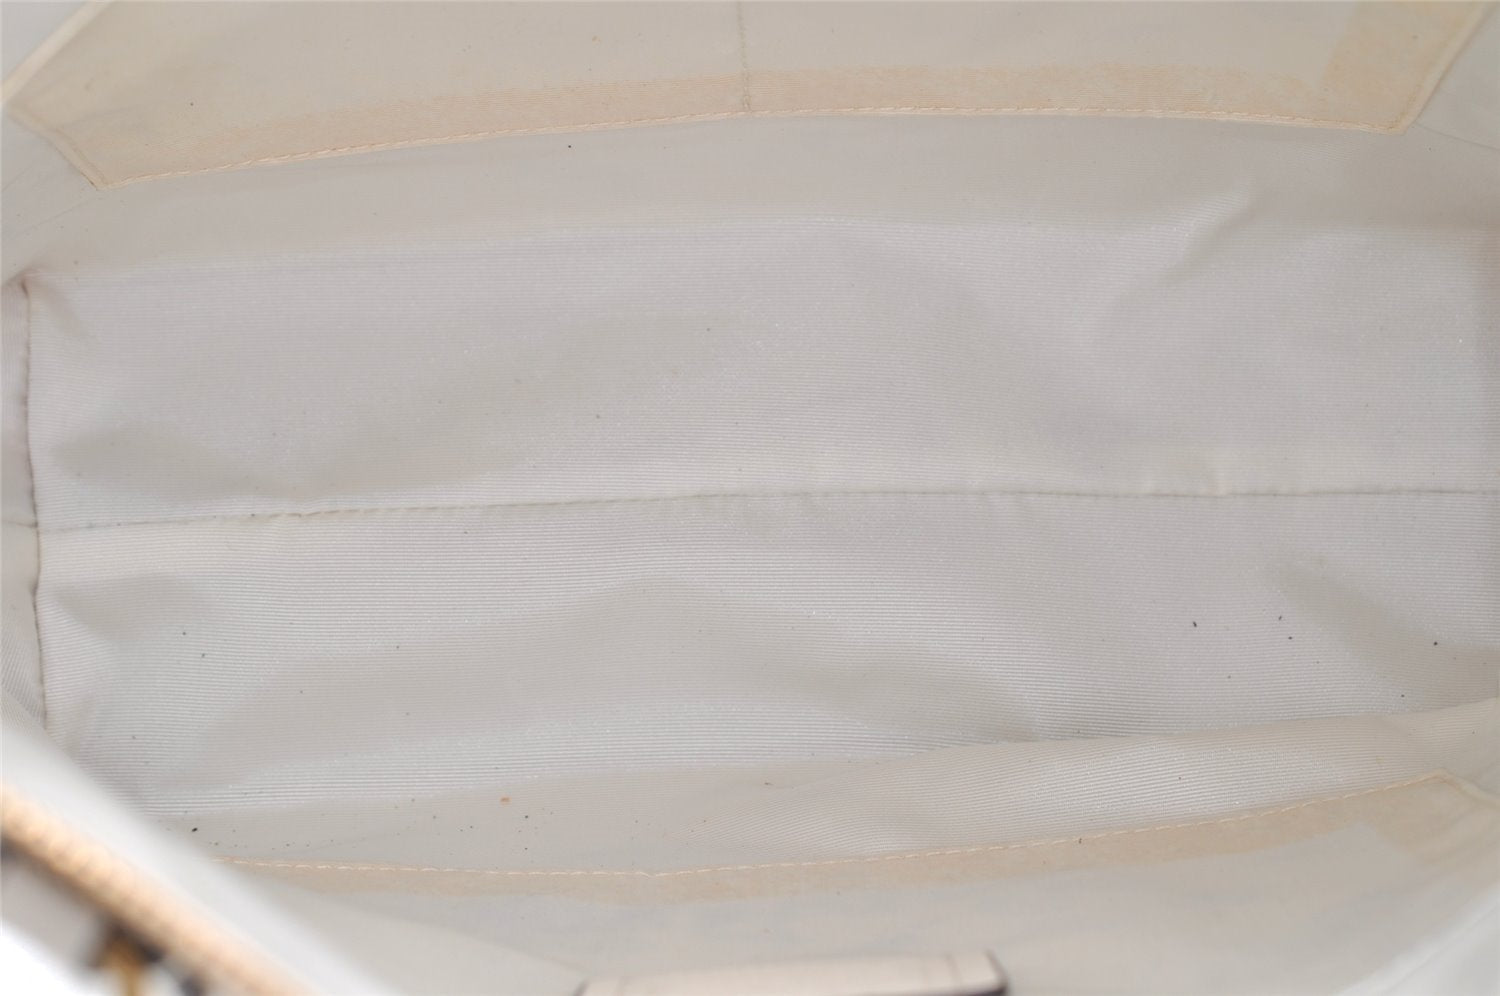 Authentic COACH Signature Shoulder Tote Bag PVC Leather F29208 Beige 7881J